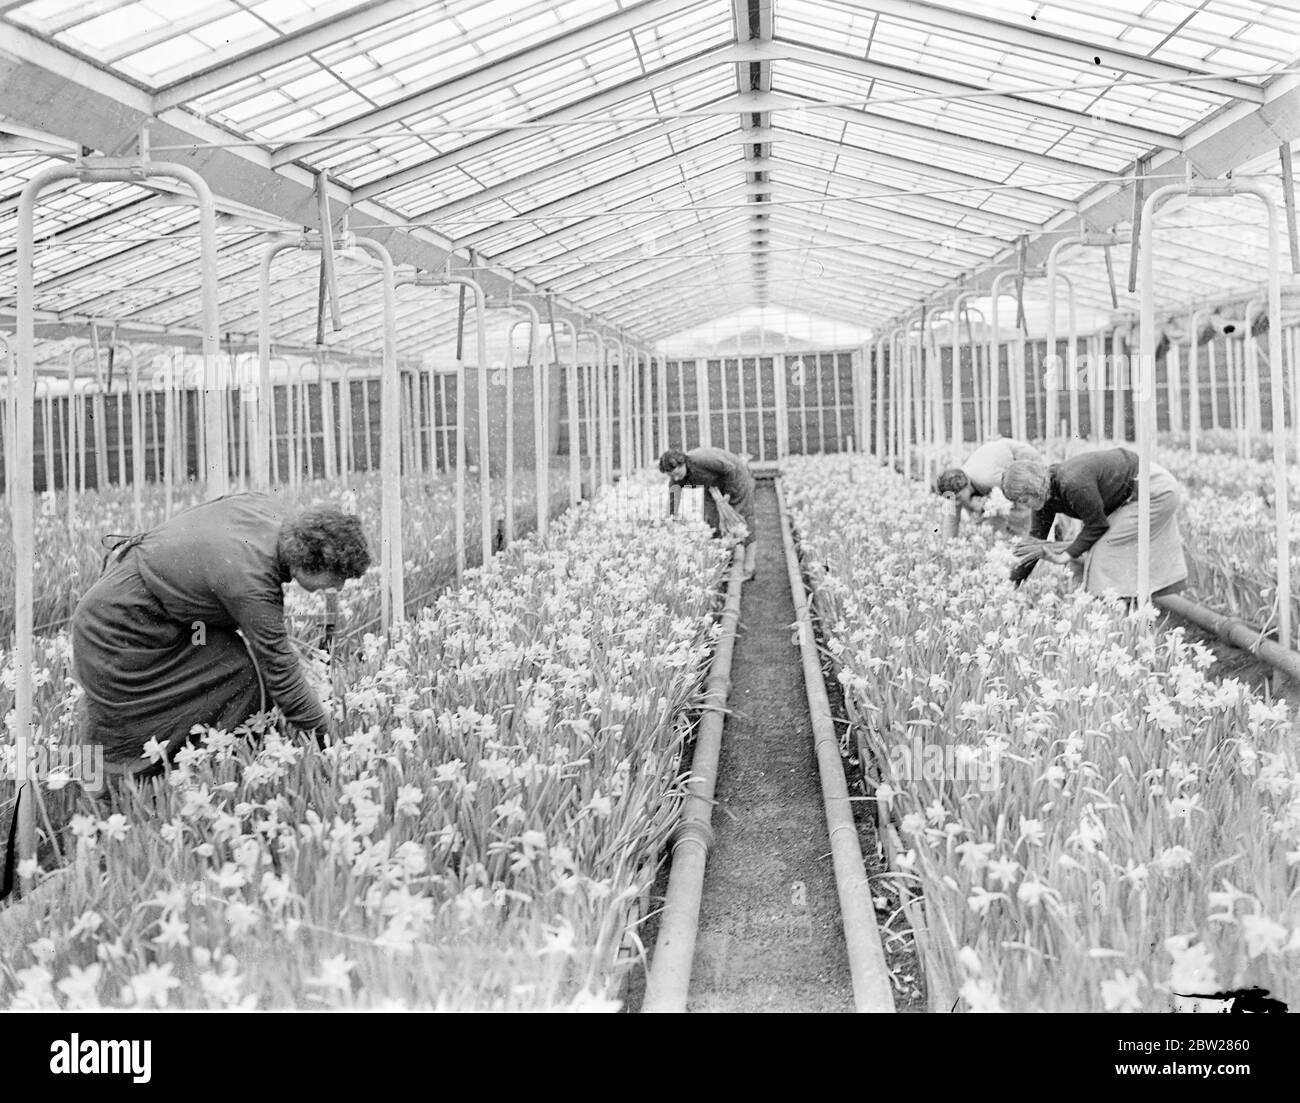 Les jonquilles d'or amènent Londres au début du printemps. Avec le printemps encore loin, des milliers de jonquilles dorées sont déjà rassemblées pour le marché de Londres dans une pépinière d'Uxbridge (Middlesex). Des tulipes de nombreuses couleurs sont également en fleur là. Expositions de photos, jonquilles étant rassemblées sous verre à Uxbridge, Middlesex. 19 janvier 1938 Banque D'Images